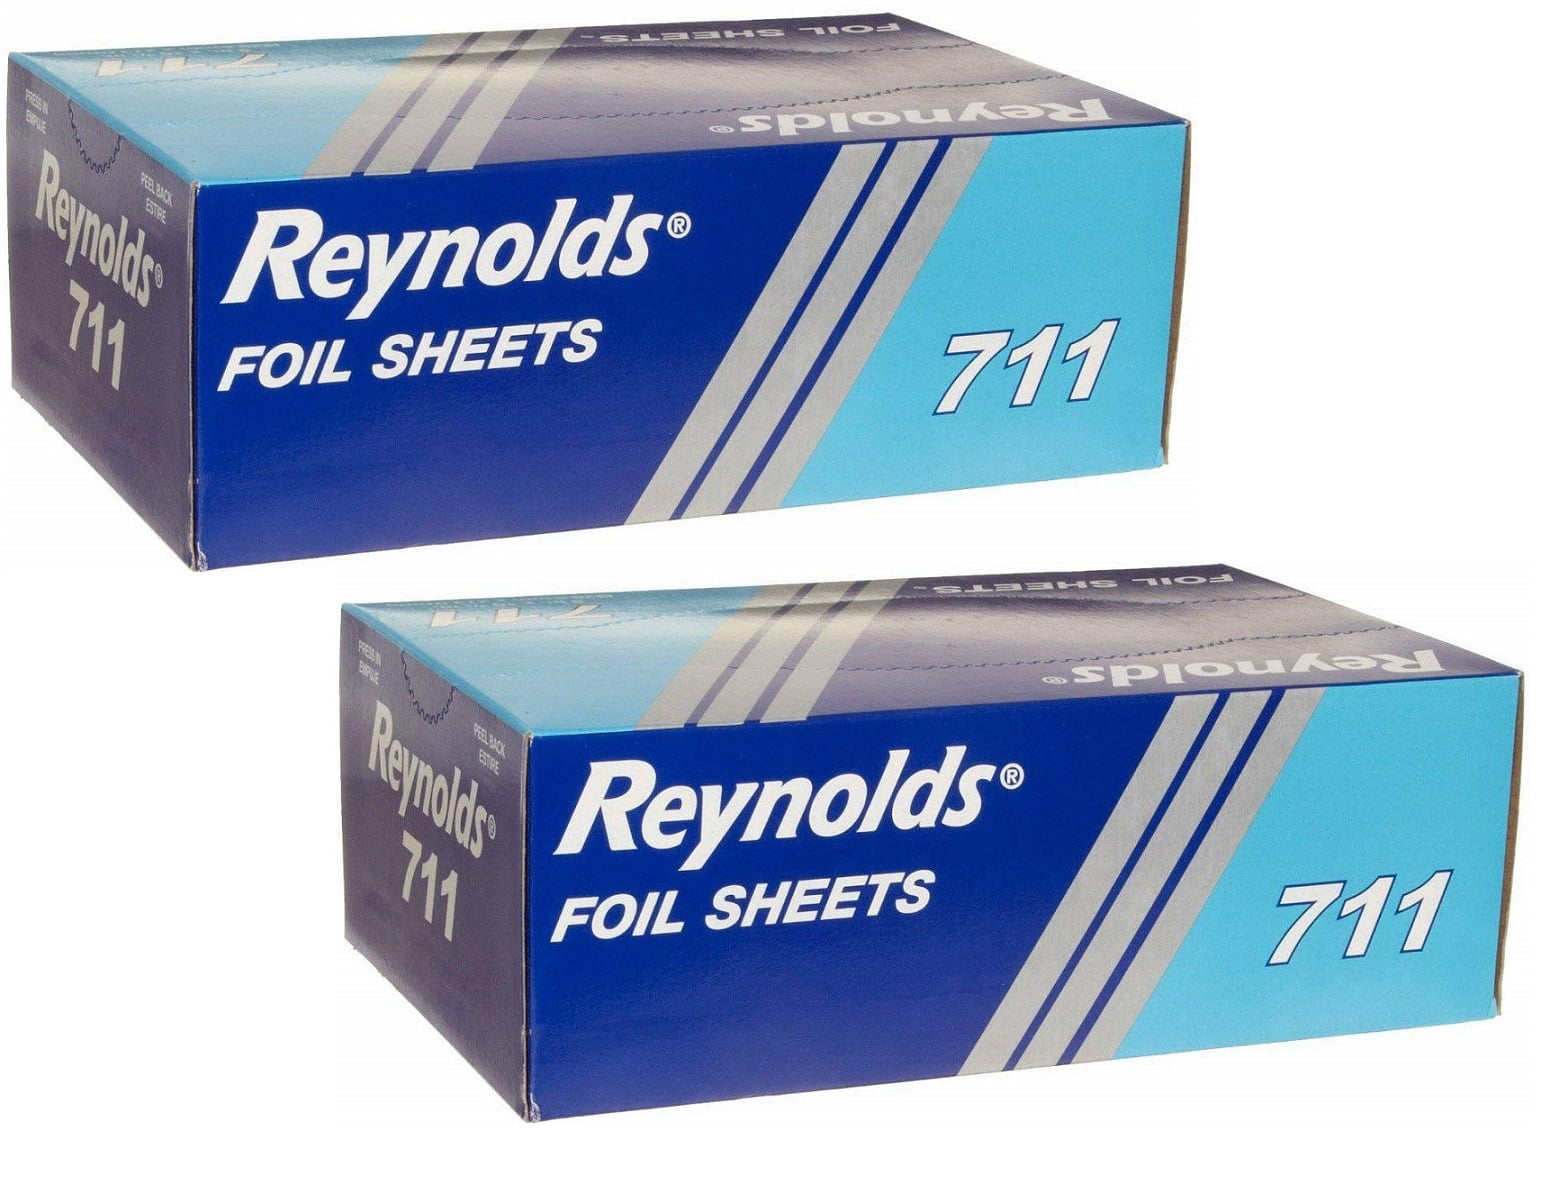 Reynolds 721 12 Length x 10-3/4 Width, Plain Interfolded Foil Sheet 6 Packs of